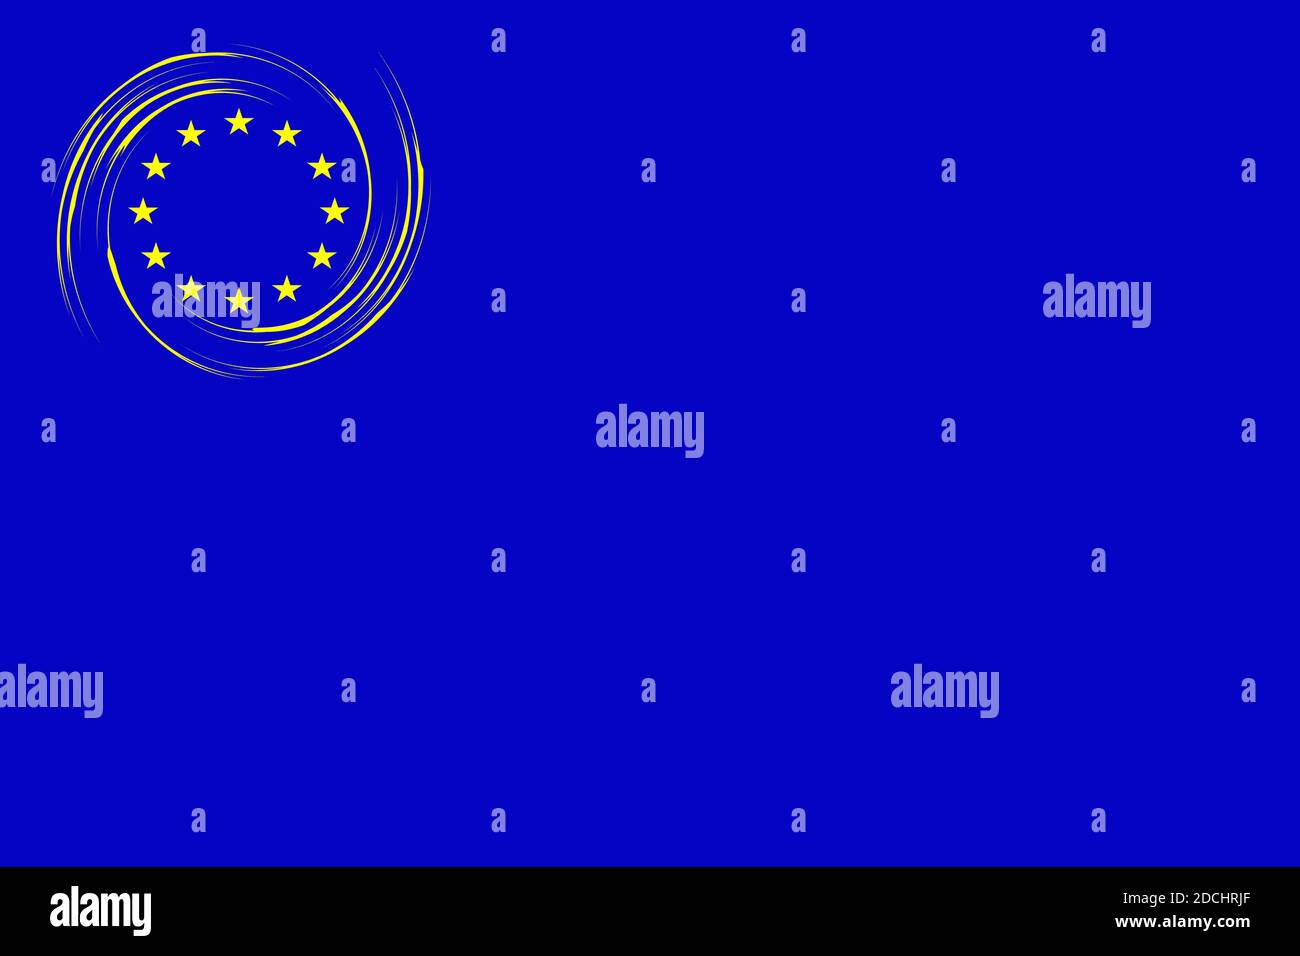 Immagine di fondo della bandiera dell'Unione europea Foto Stock